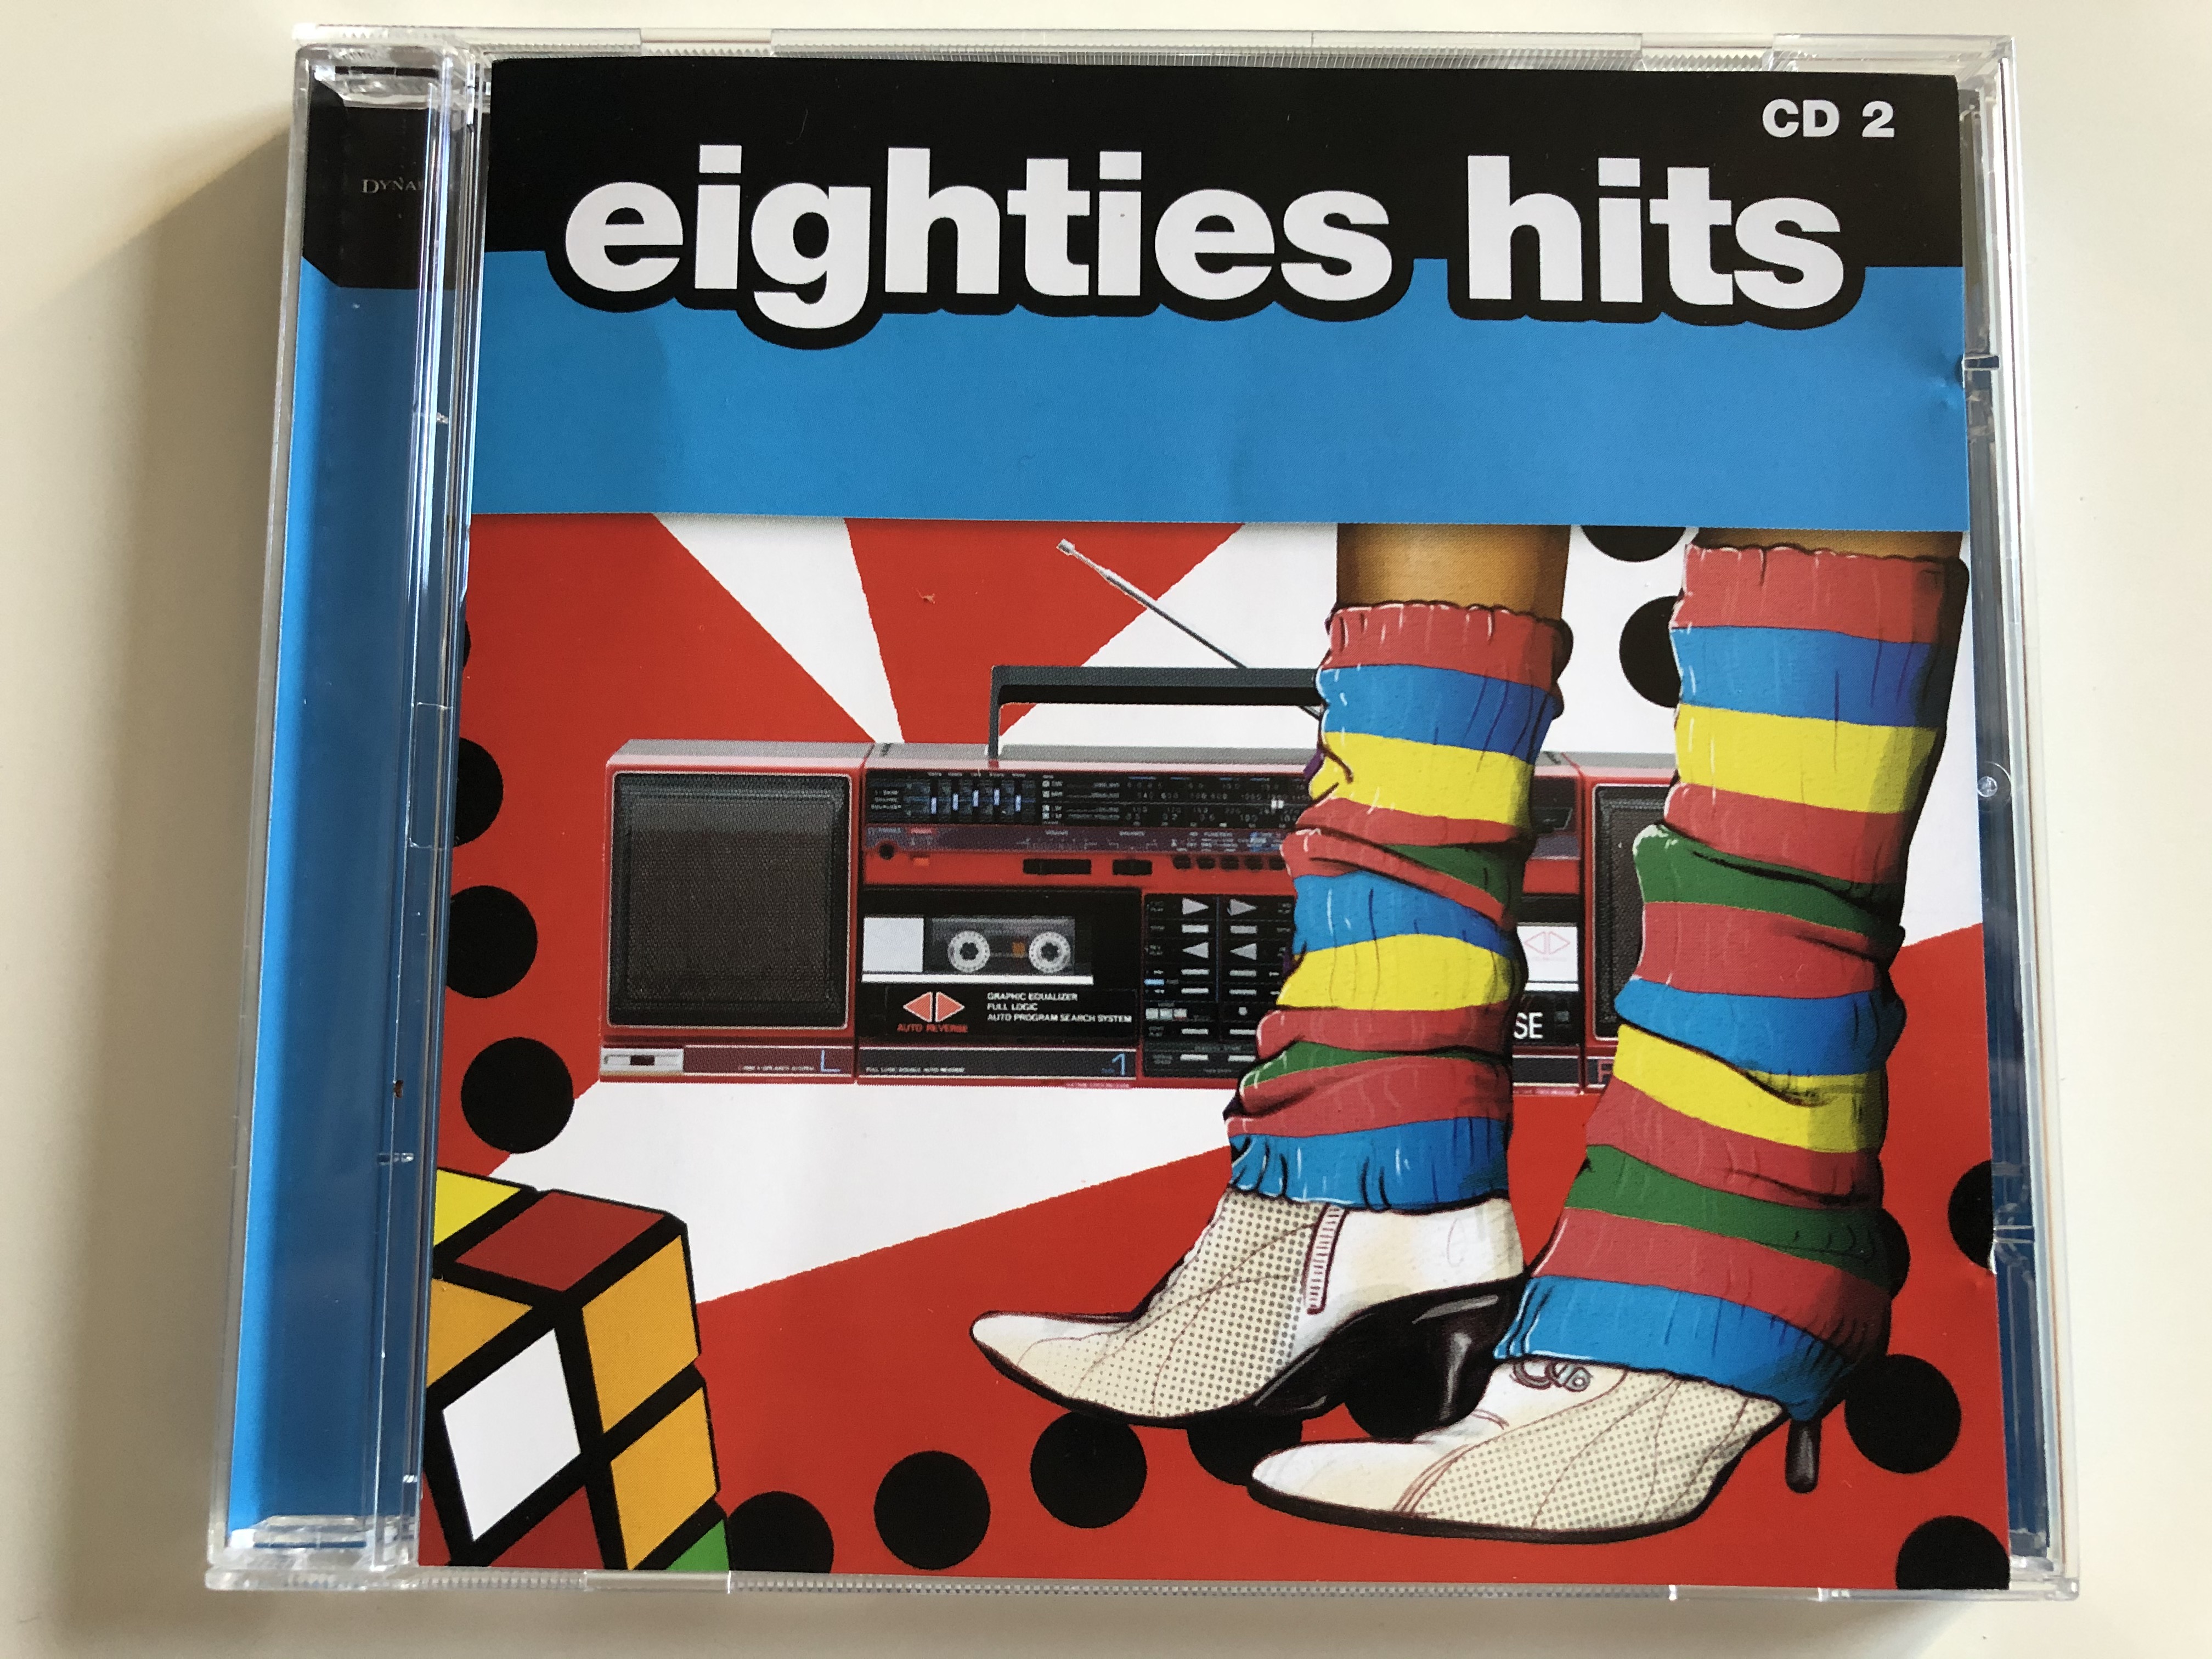 eighties-hits-cd-2-dynamic-audio-cd-2007-dyn-3905-2-1-.jpg